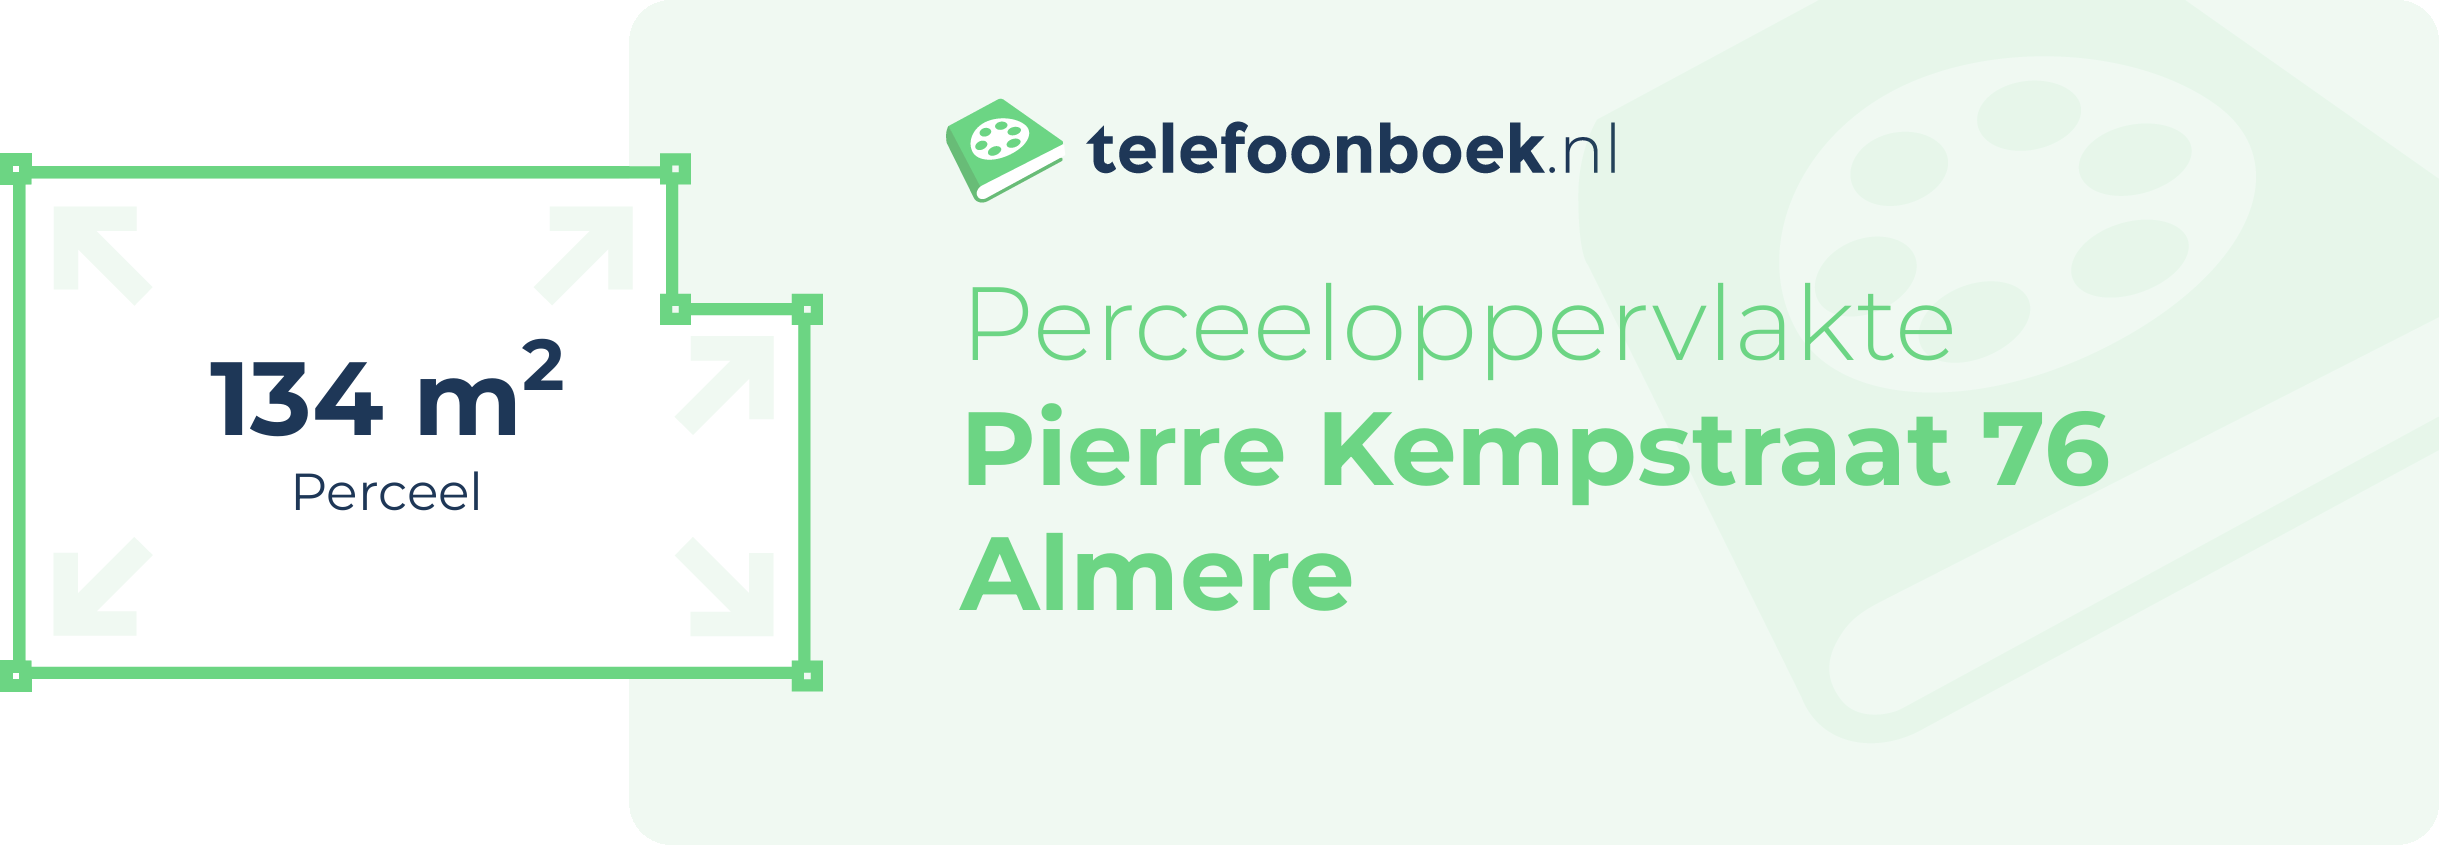 Perceeloppervlakte Pierre Kempstraat 76 Almere